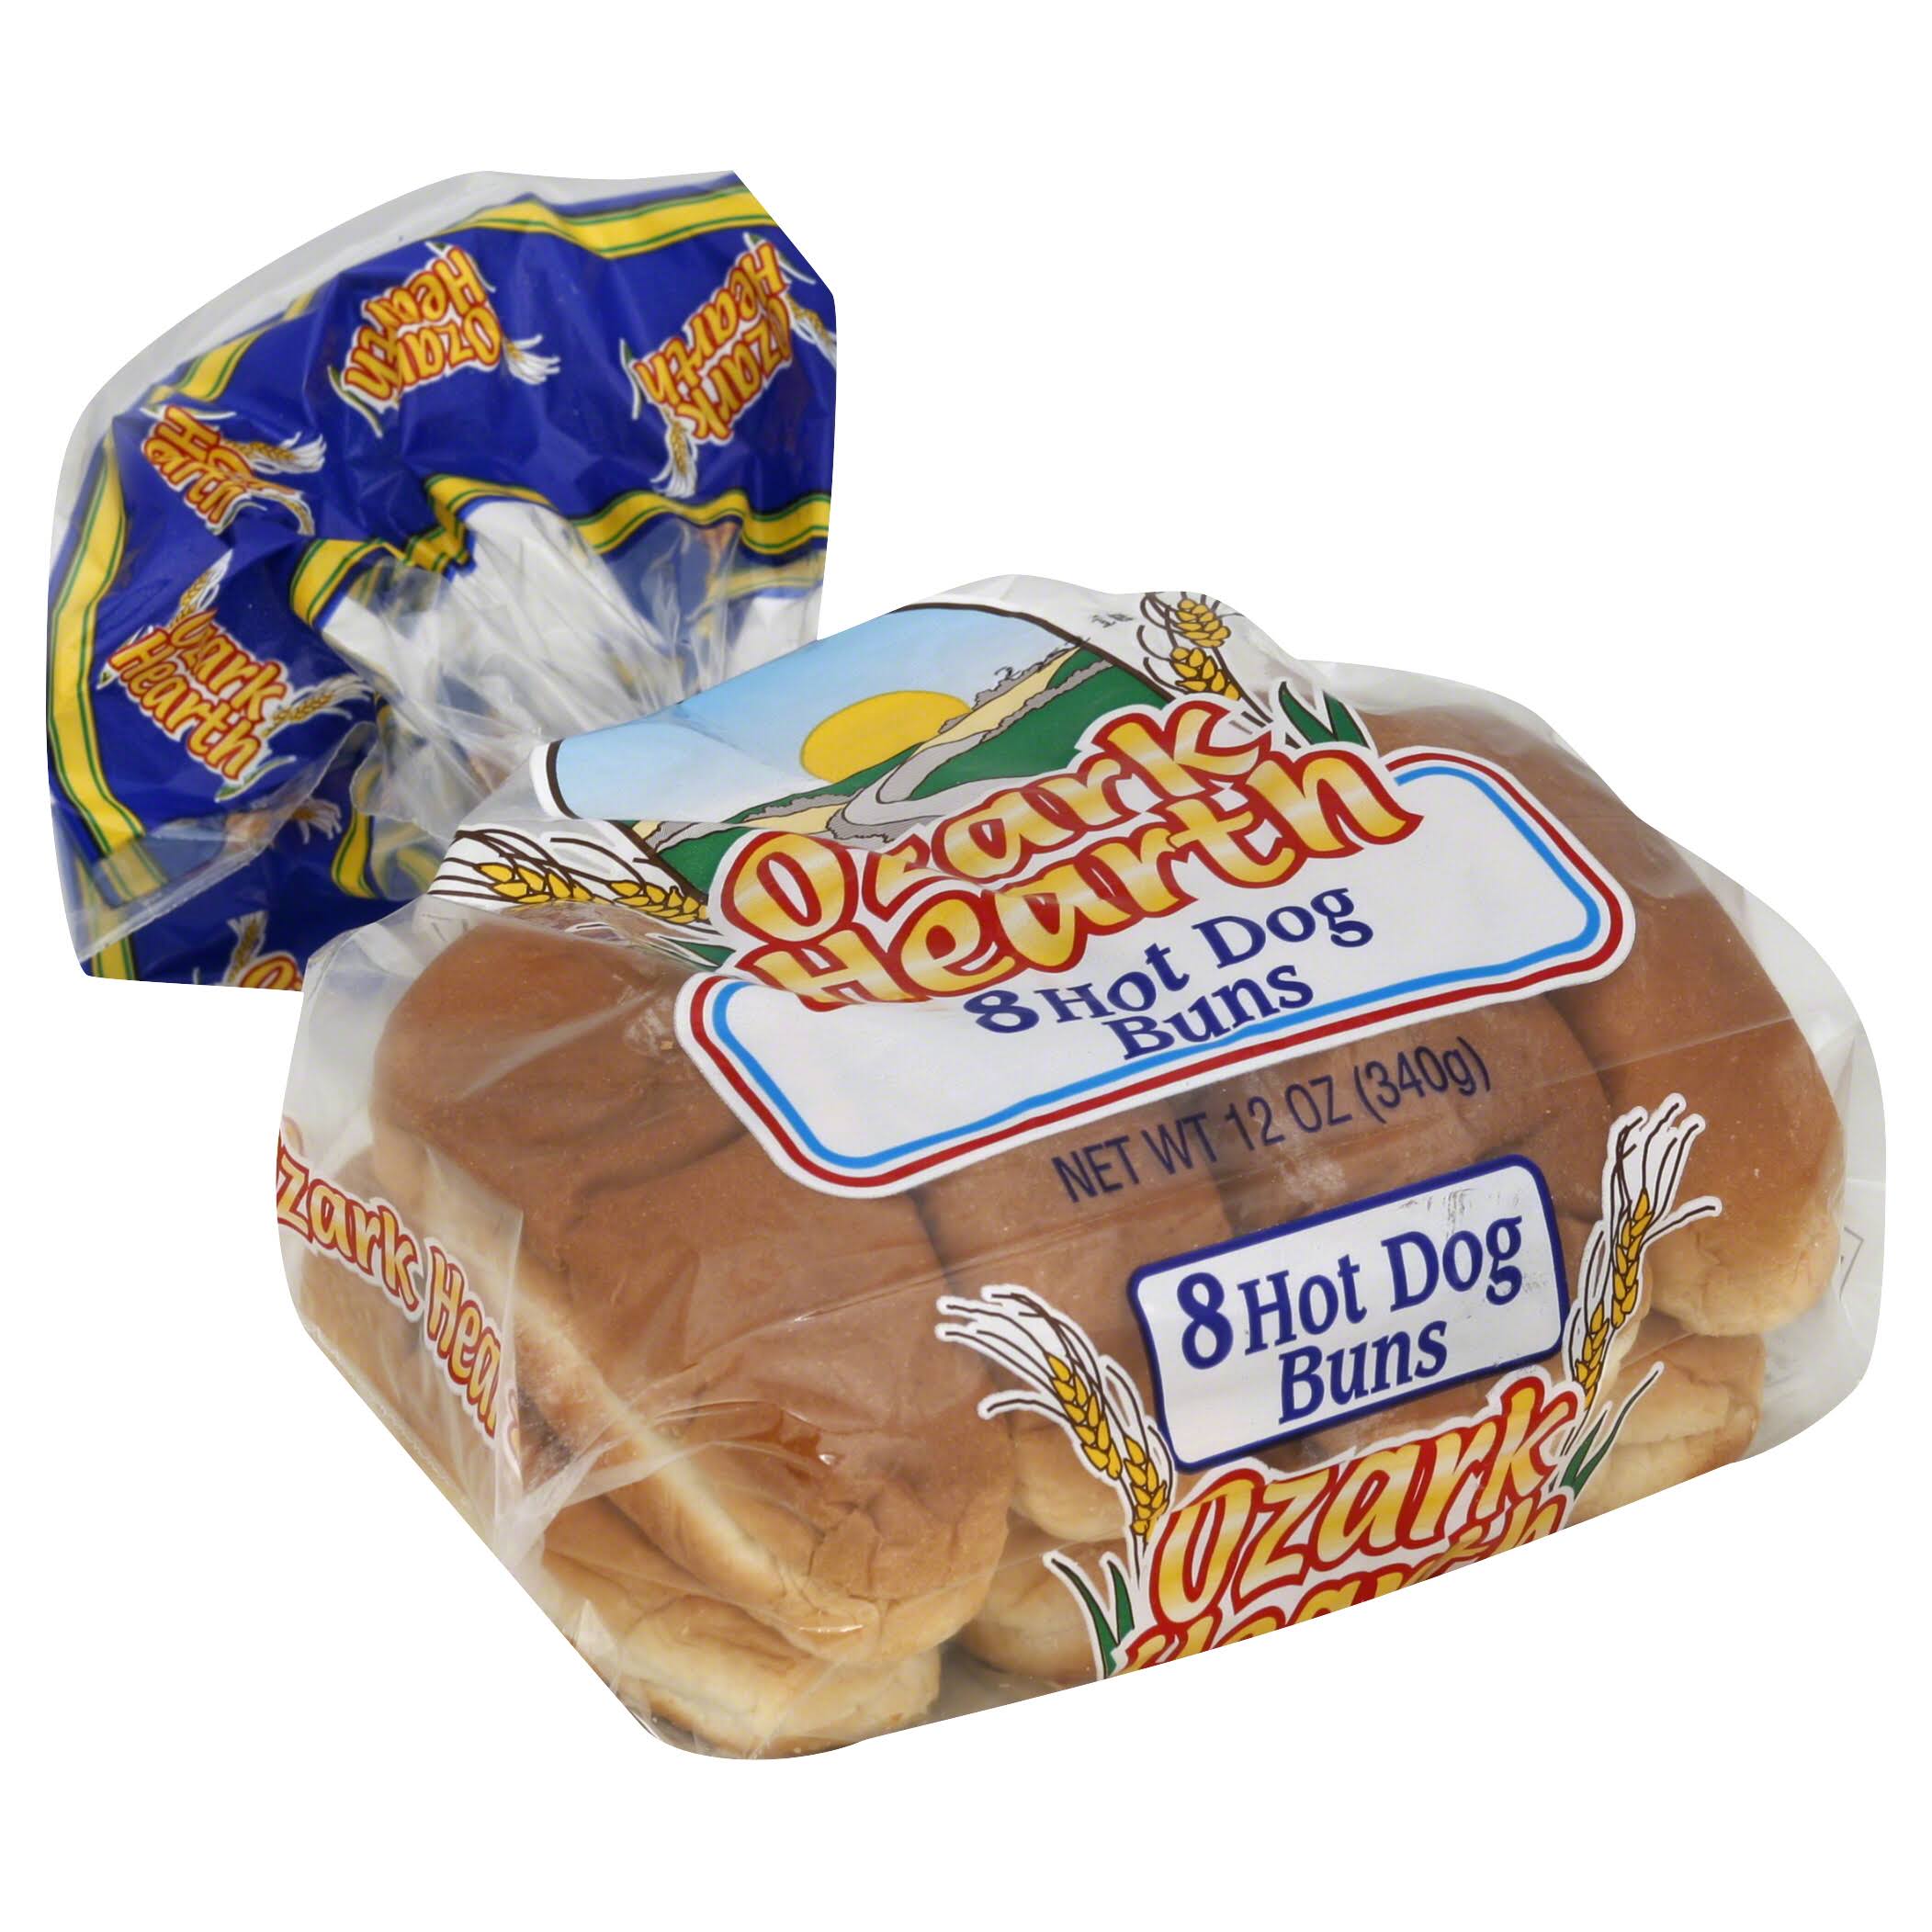 Ozark Hearth Hot Dog Buns - 8 buns, 12 oz